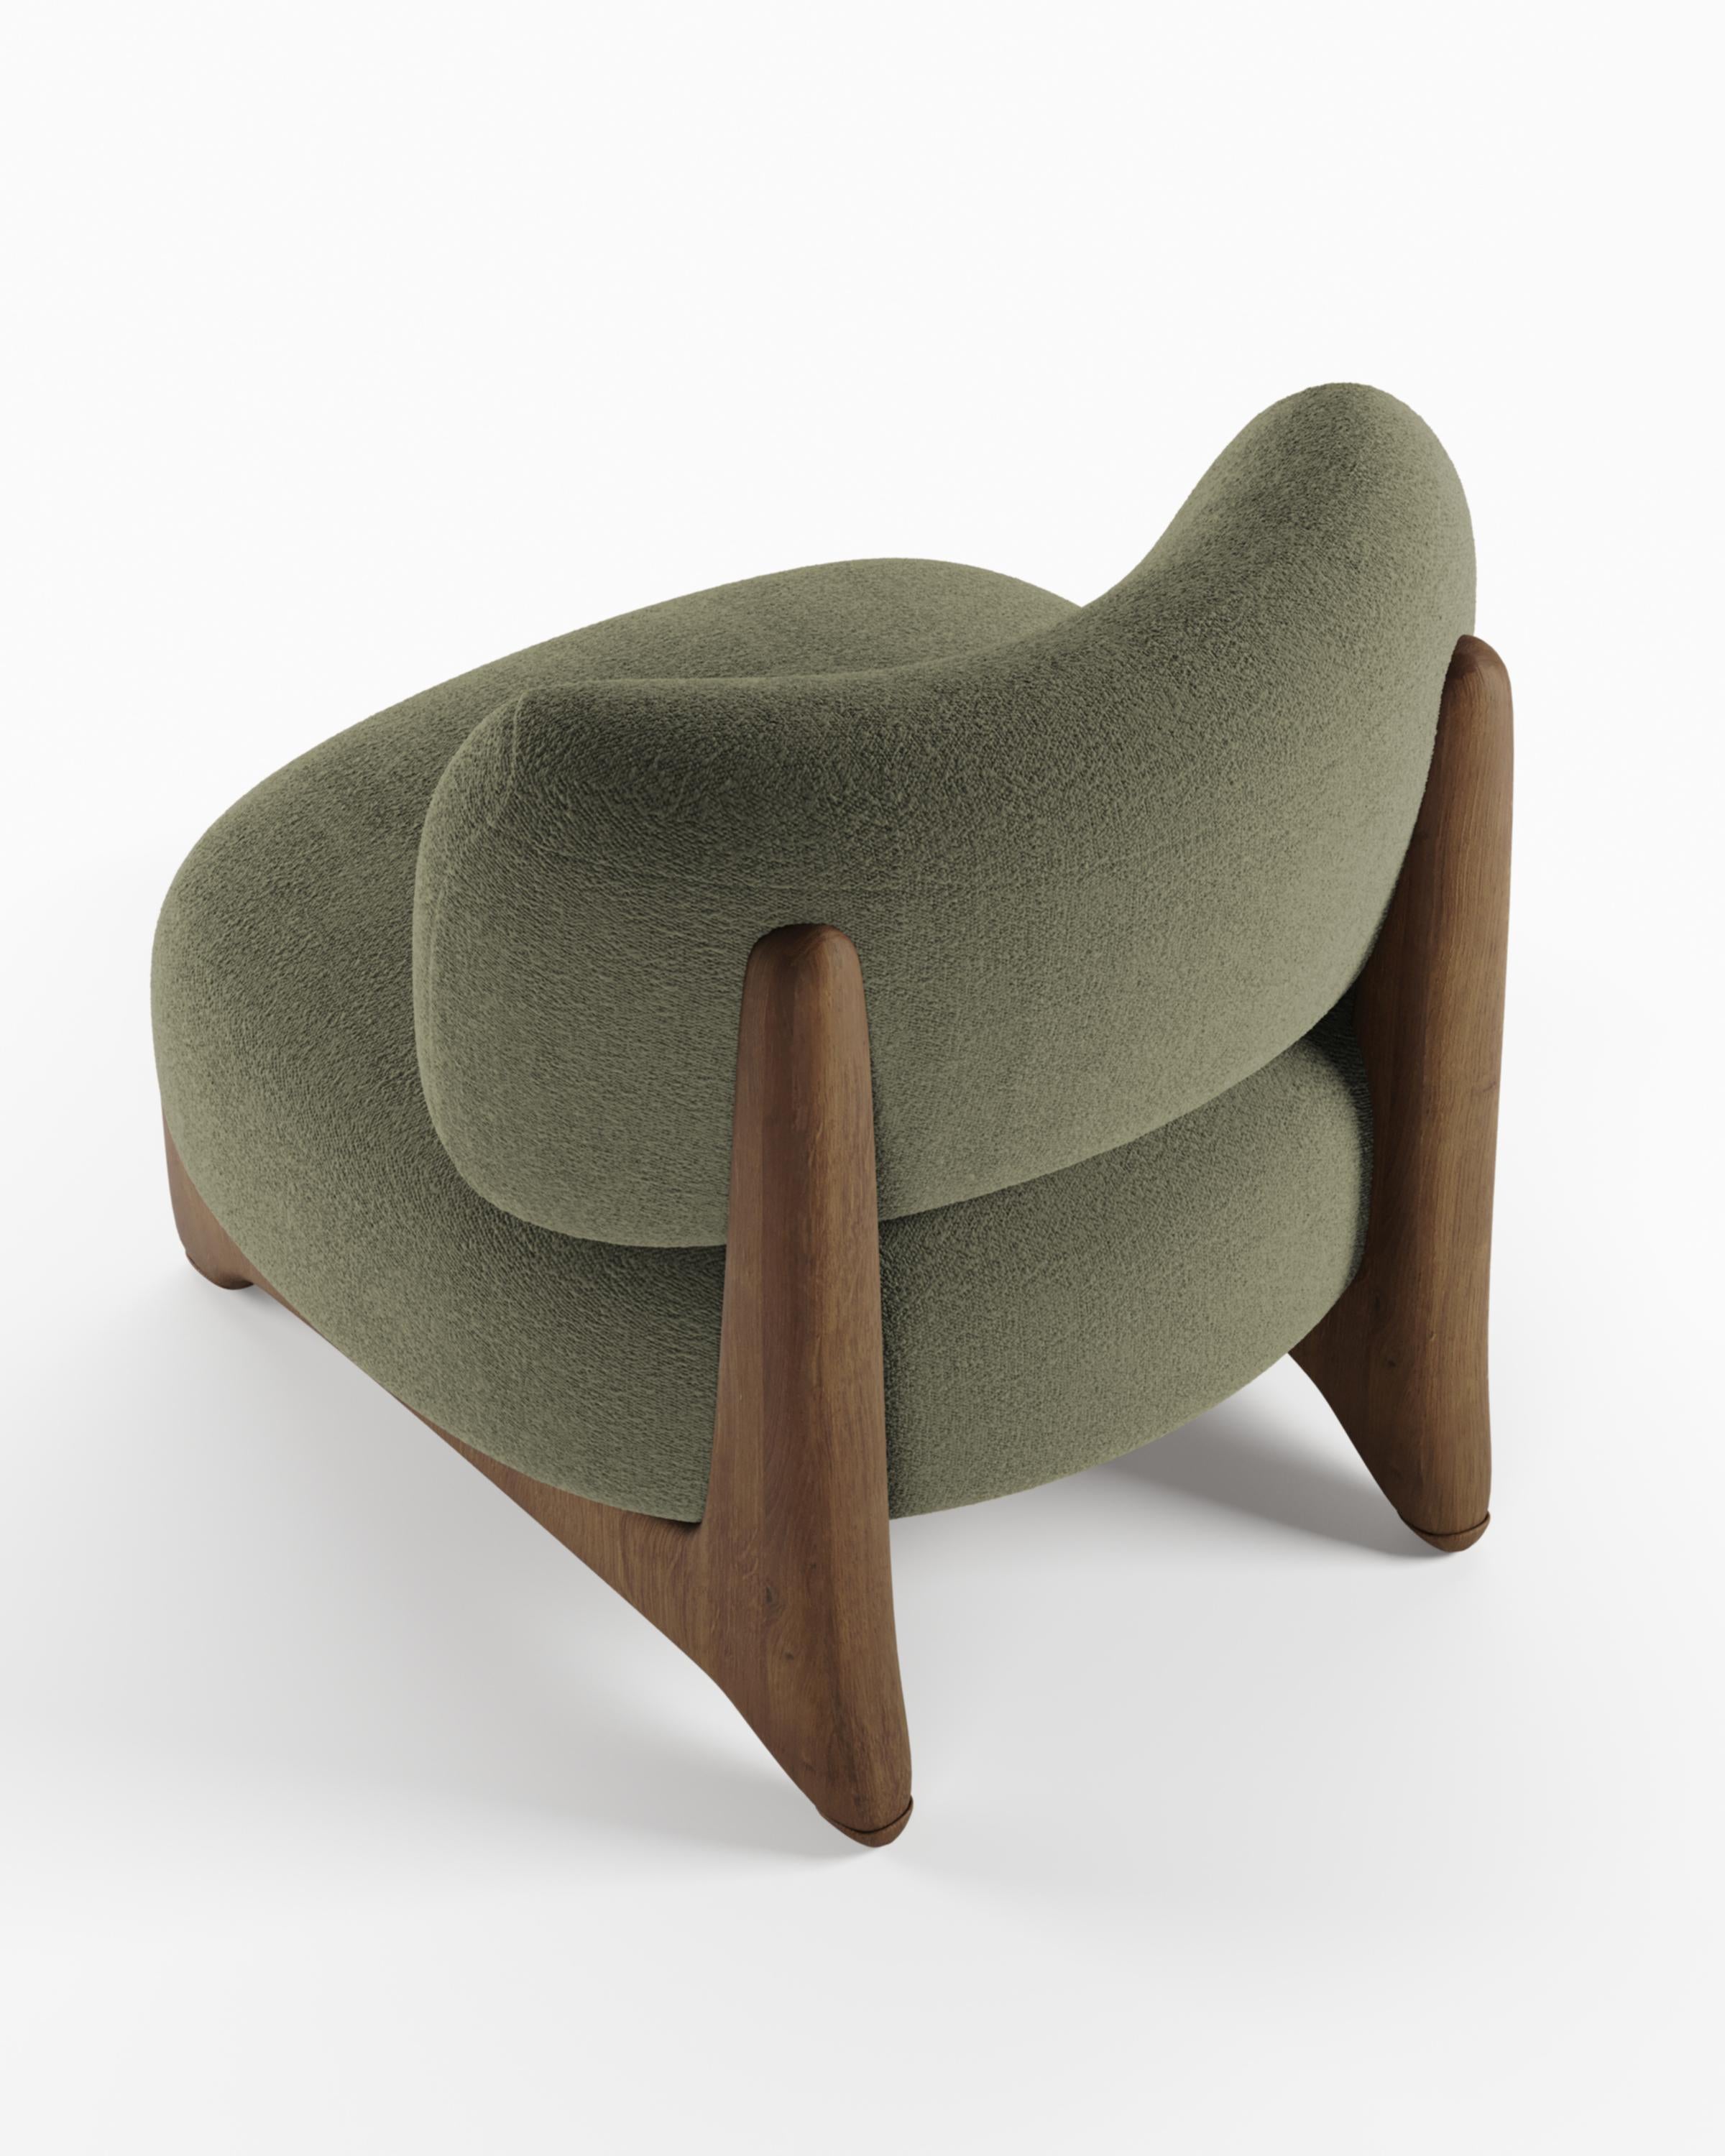 Moderner Tobo Sessel aus Stoff und Eichenholz von Alter Ego für Collector Studio.

Untermauert durch eine minimalistische und anspruchsvolle Ästhetik mit klaren Linien.

Abmessungen:
B 70 cm 27,6